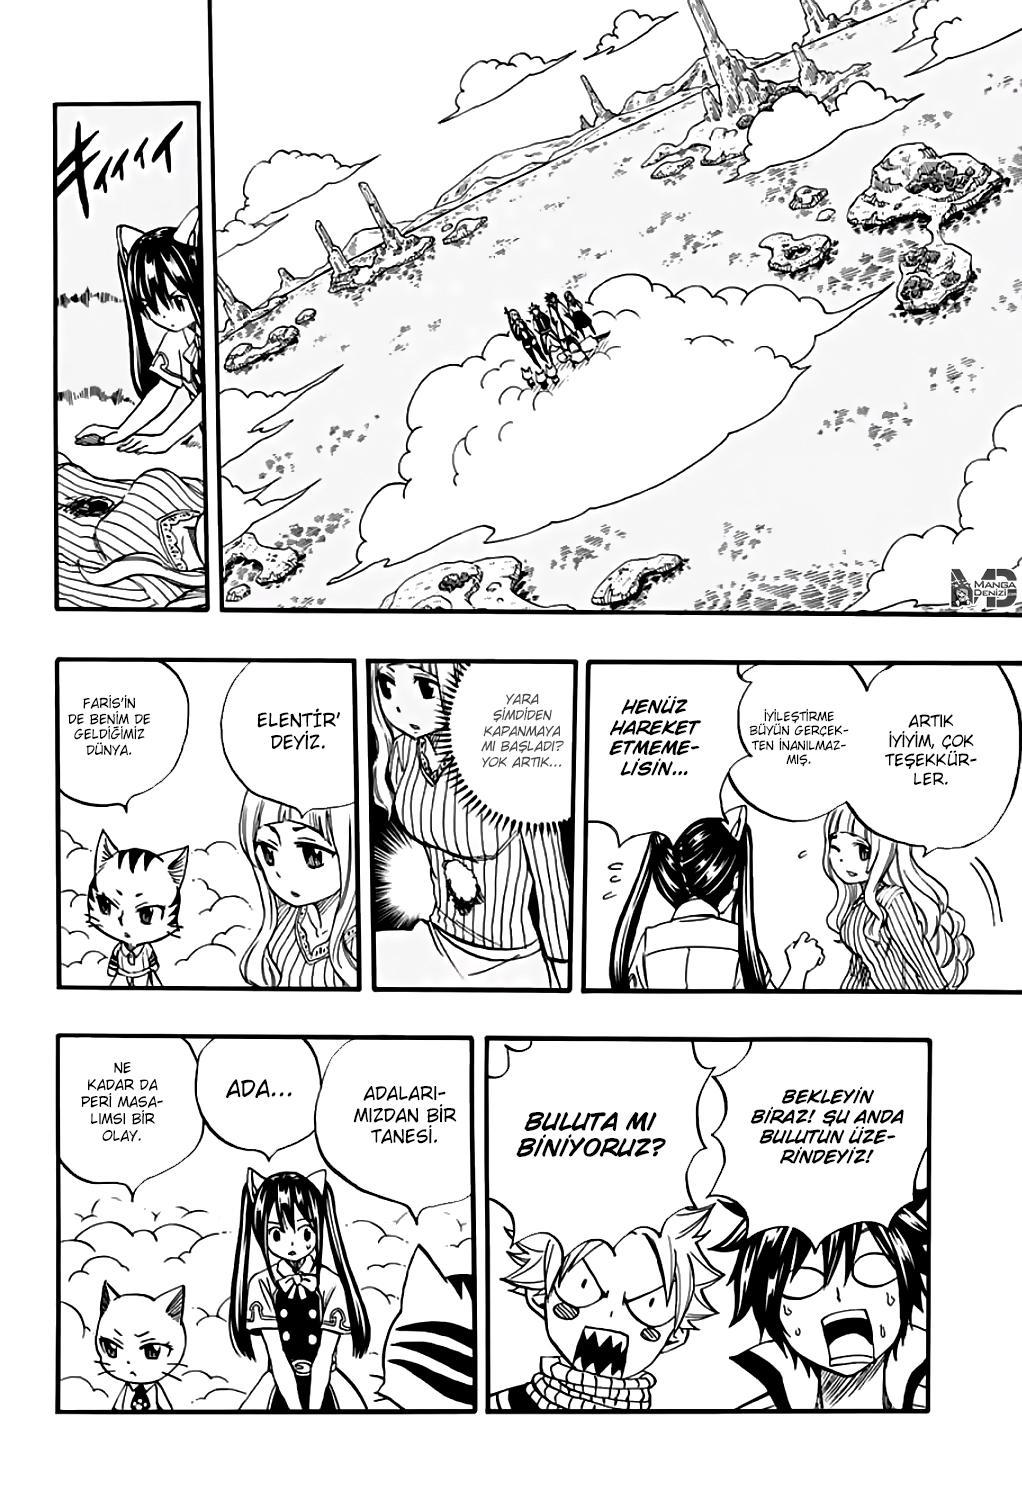 Fairy Tail: 100 Years Quest mangasının 069 bölümünün 3. sayfasını okuyorsunuz.